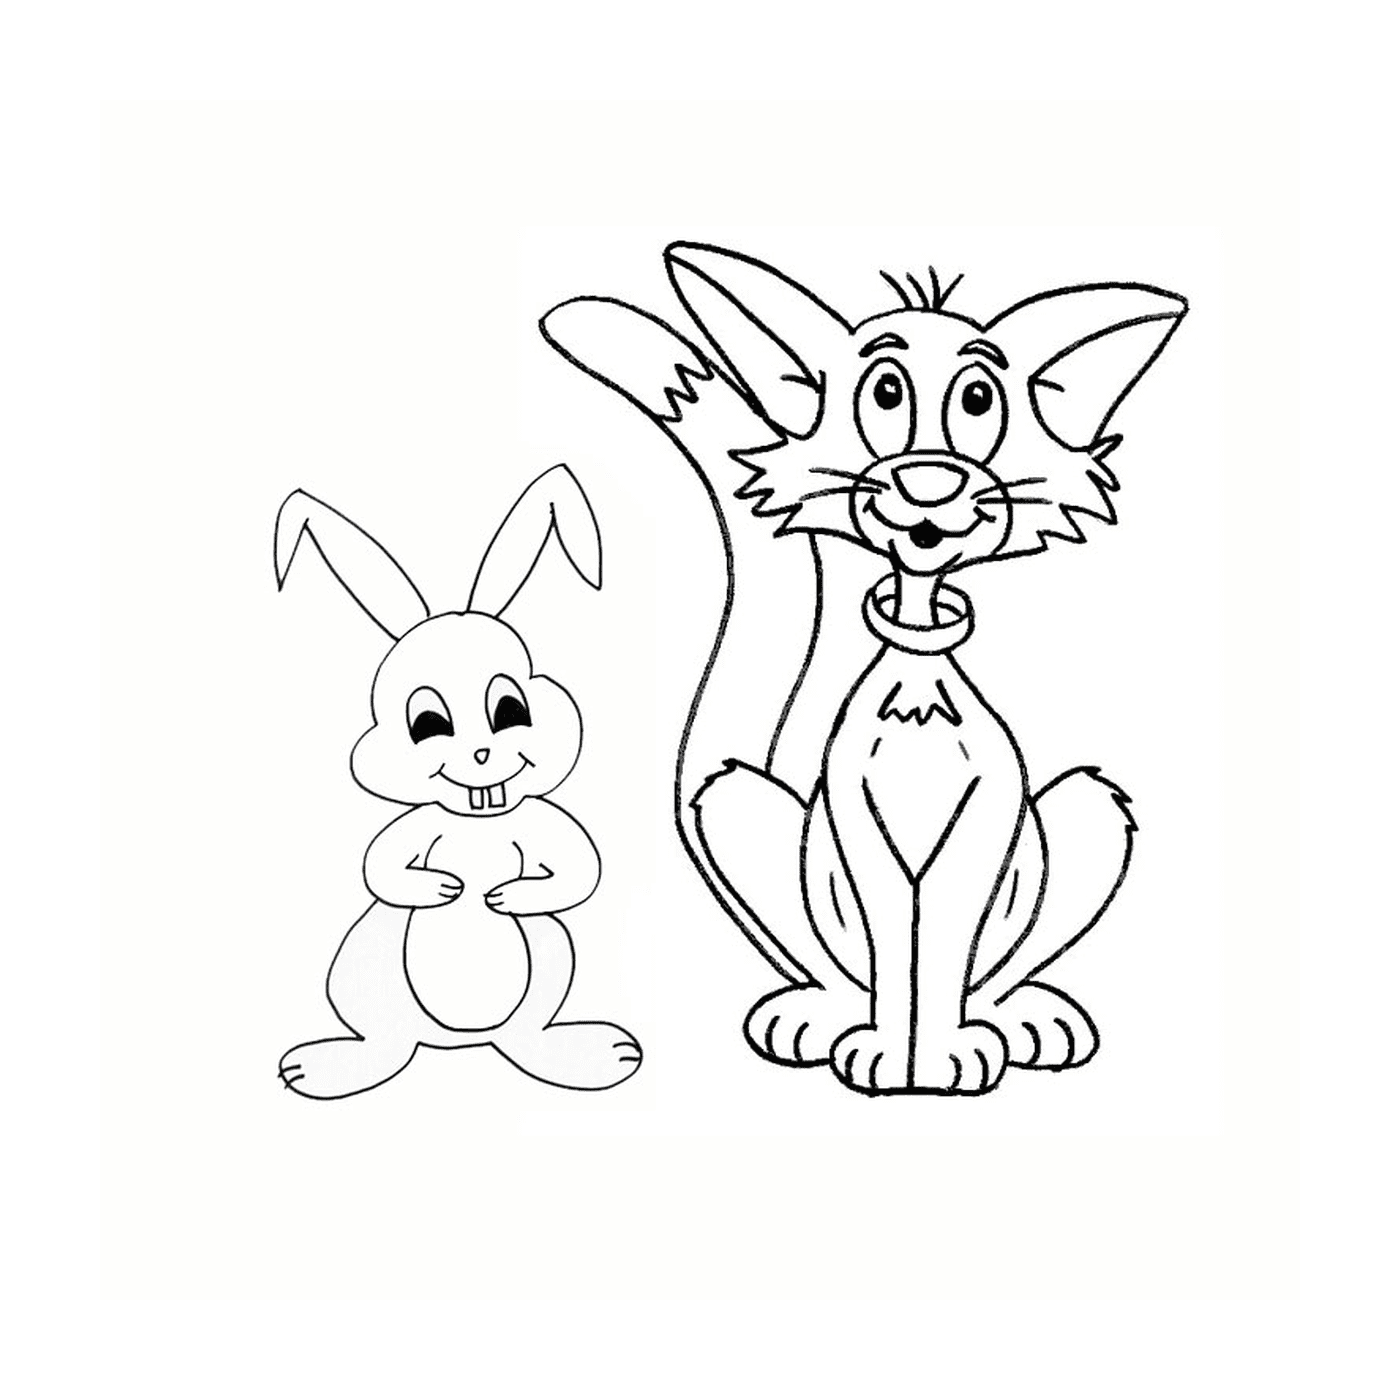   Un chat et un lapin dessinés ensemble 